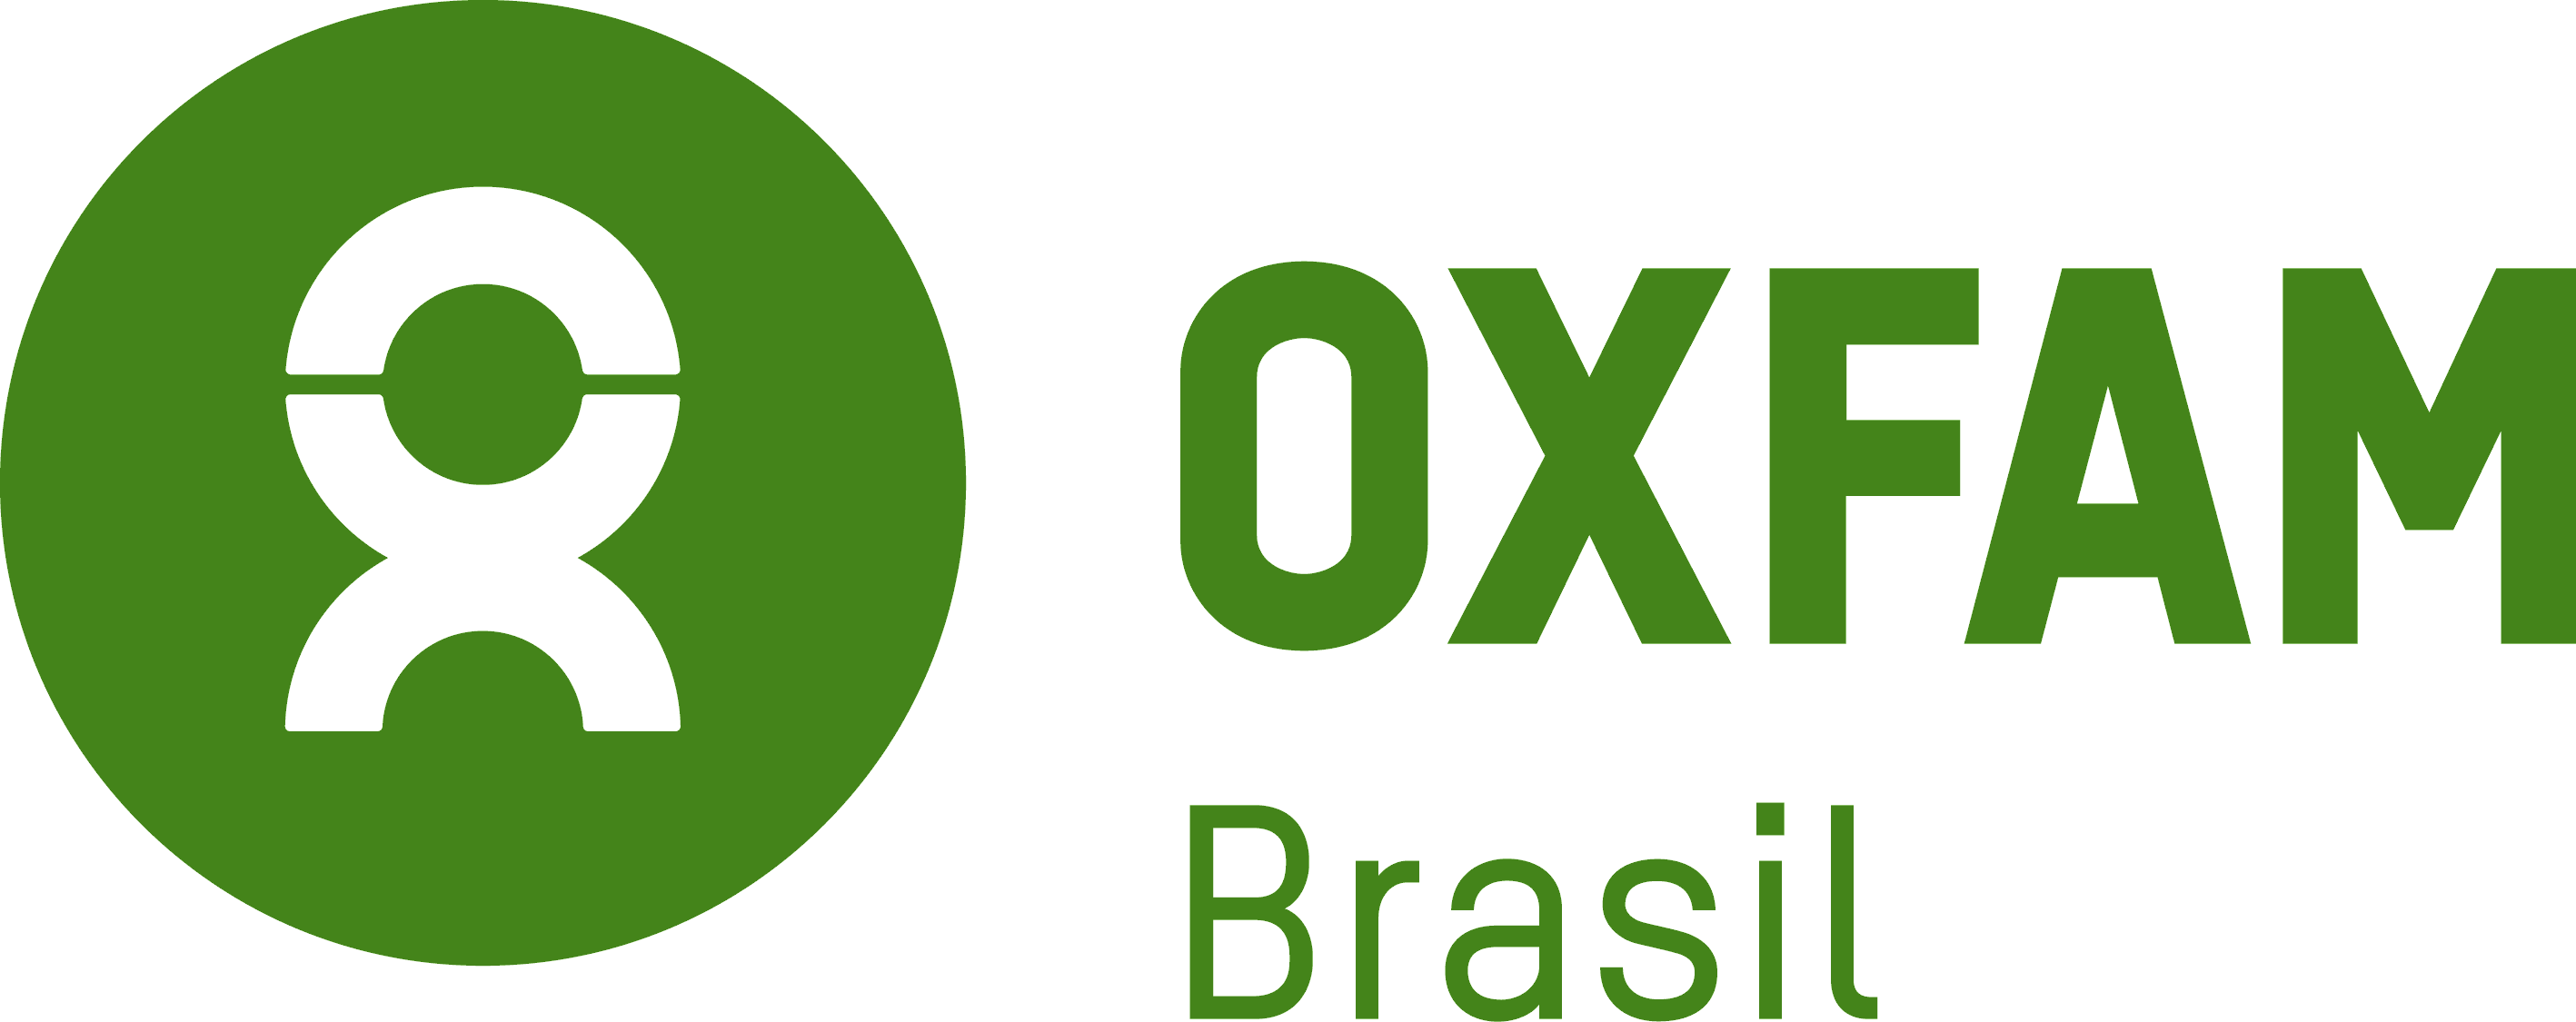 oxfam-logo_1